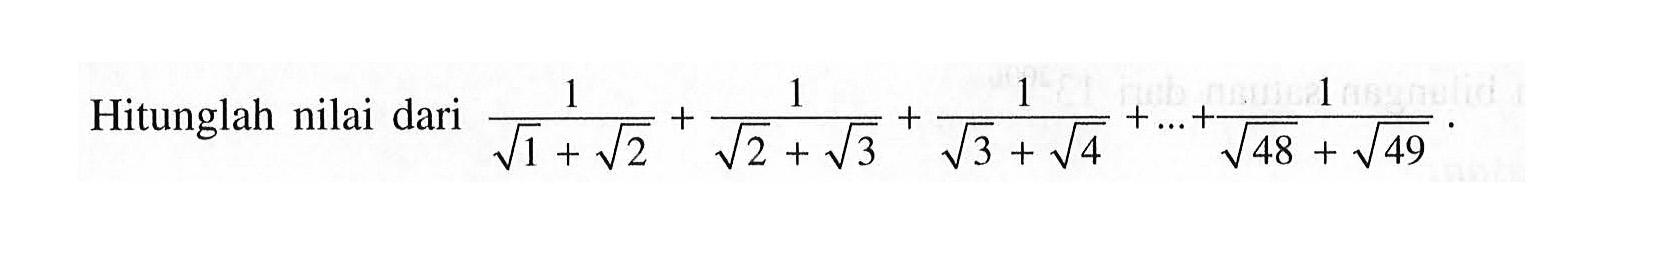 Hitunglah nilai dari 1/(akar(1) + akar(2)) + 1/(akar(2) + akar(3)) + 1/(akar(3) + akar(4)) + ... + 1/(akar(48) + akar(49))